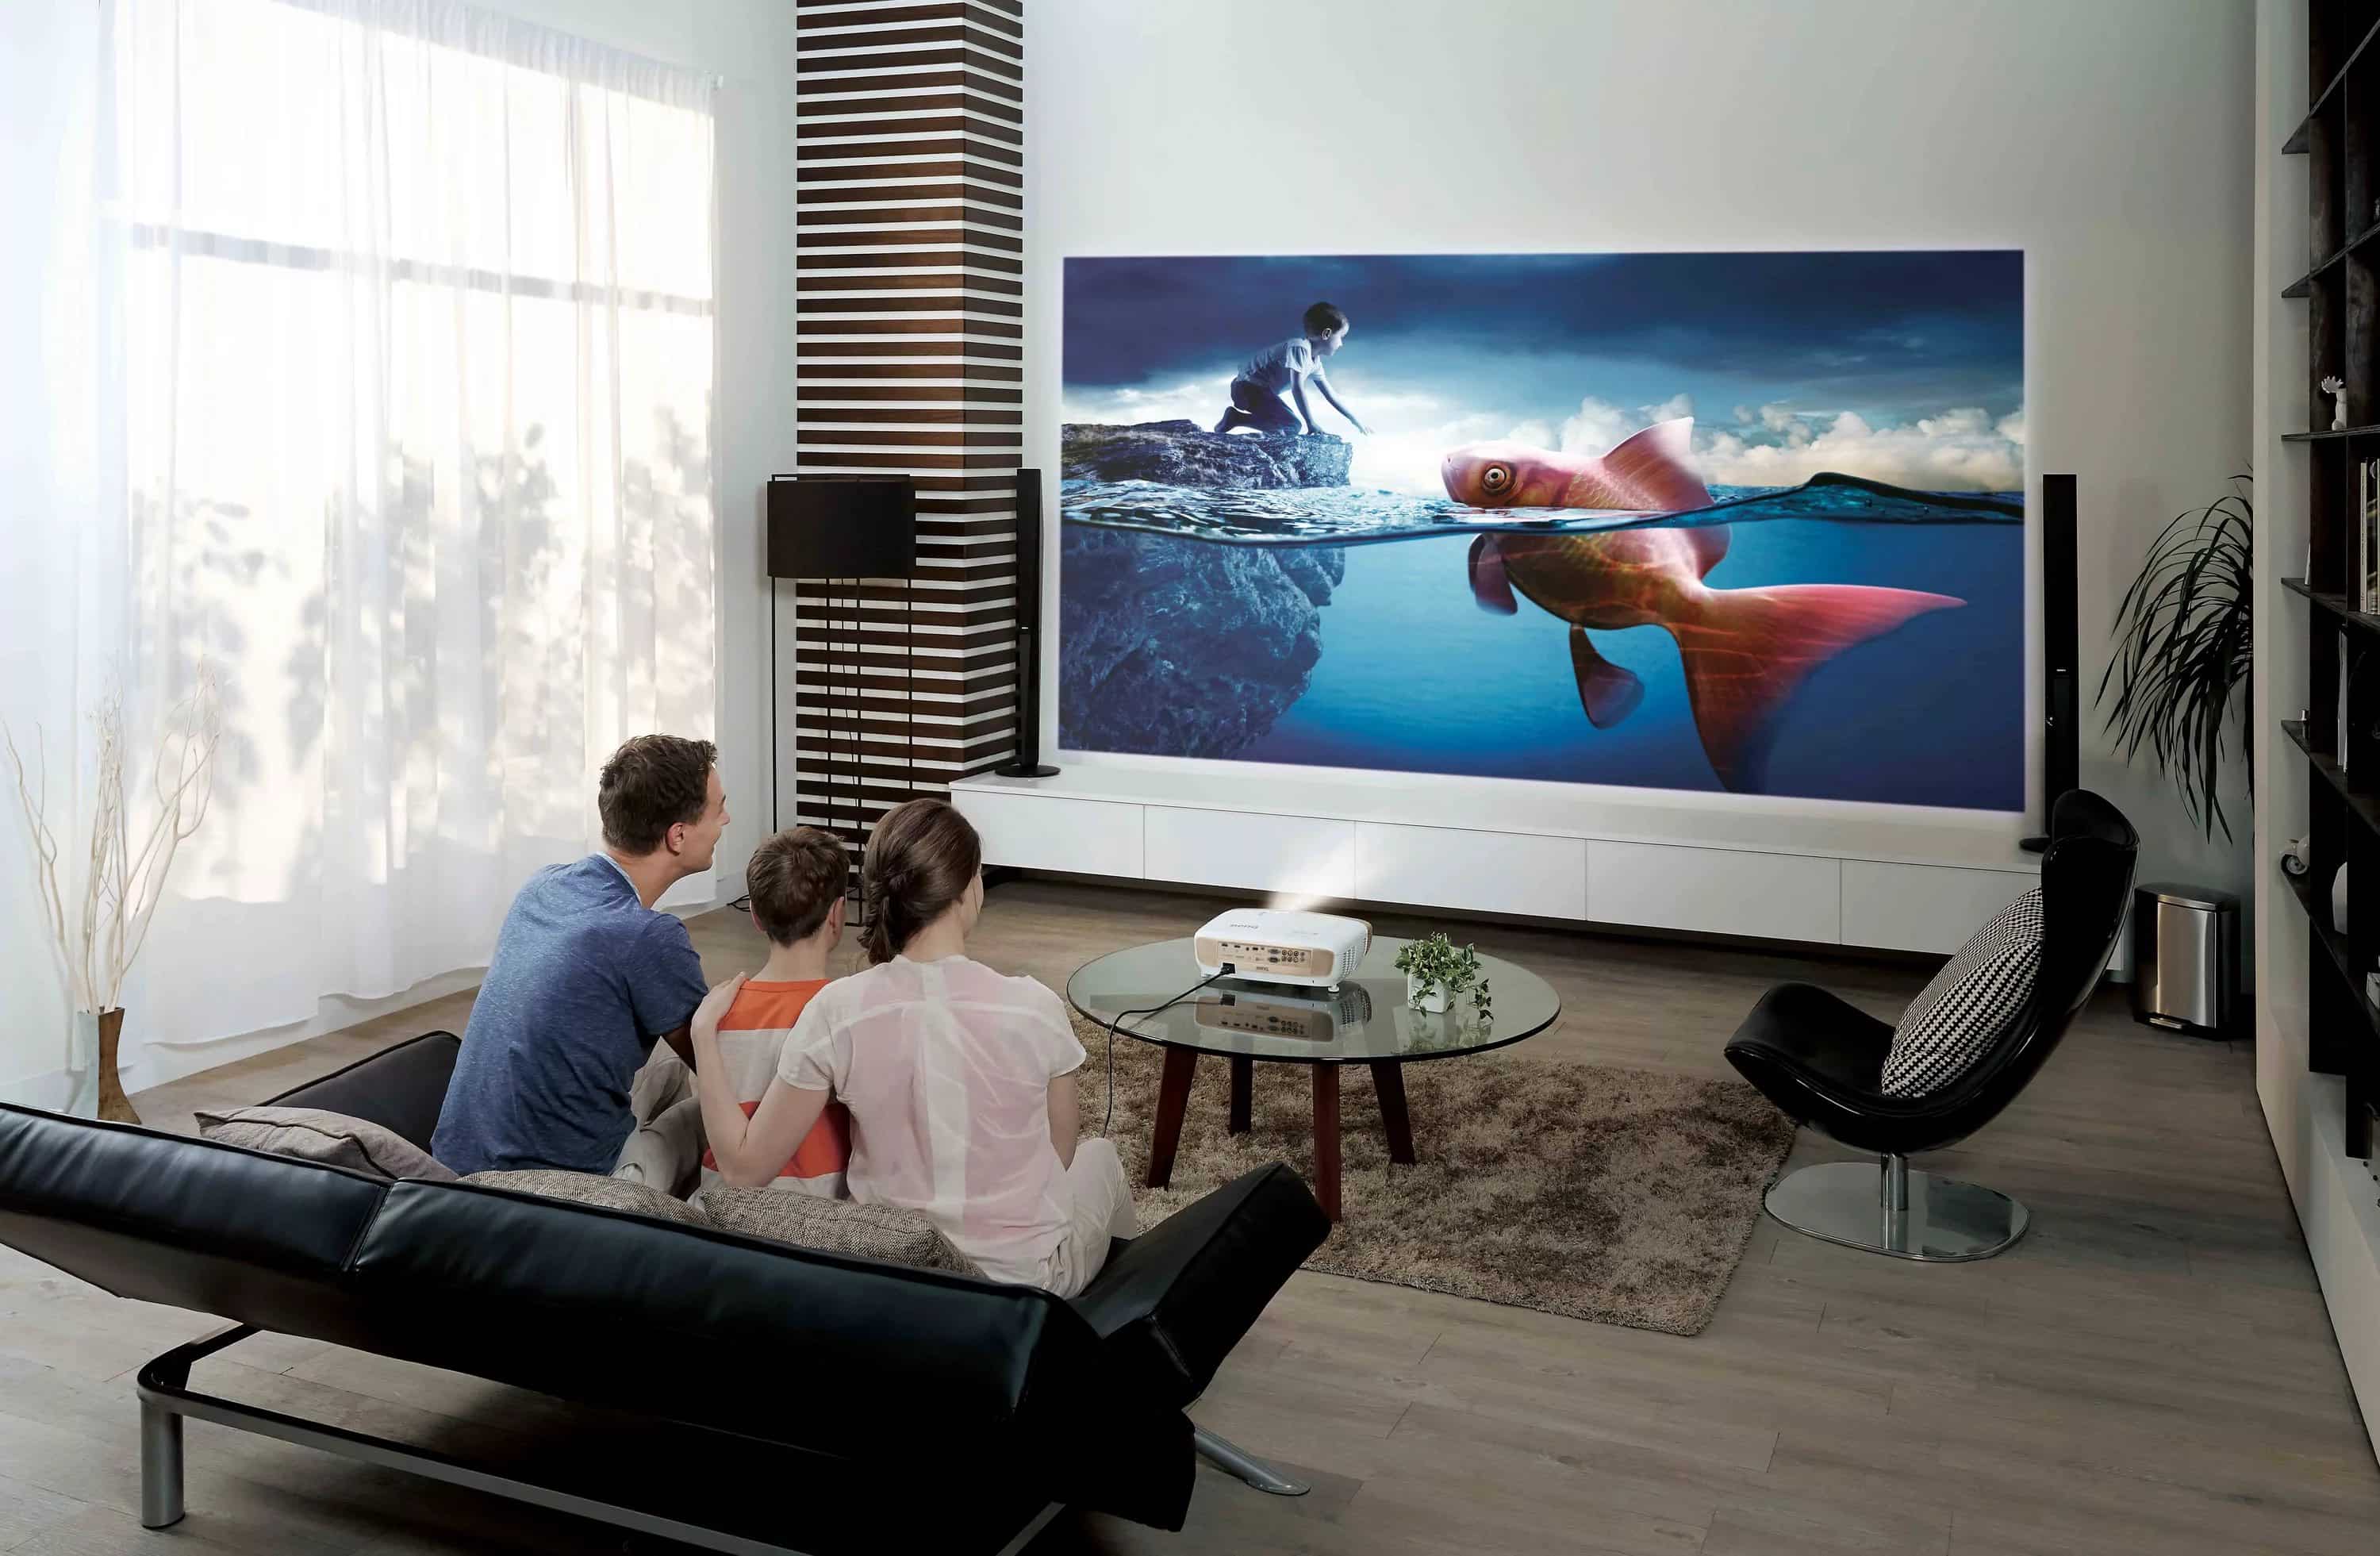 Проектор против телевизора для дома: что выбрать?